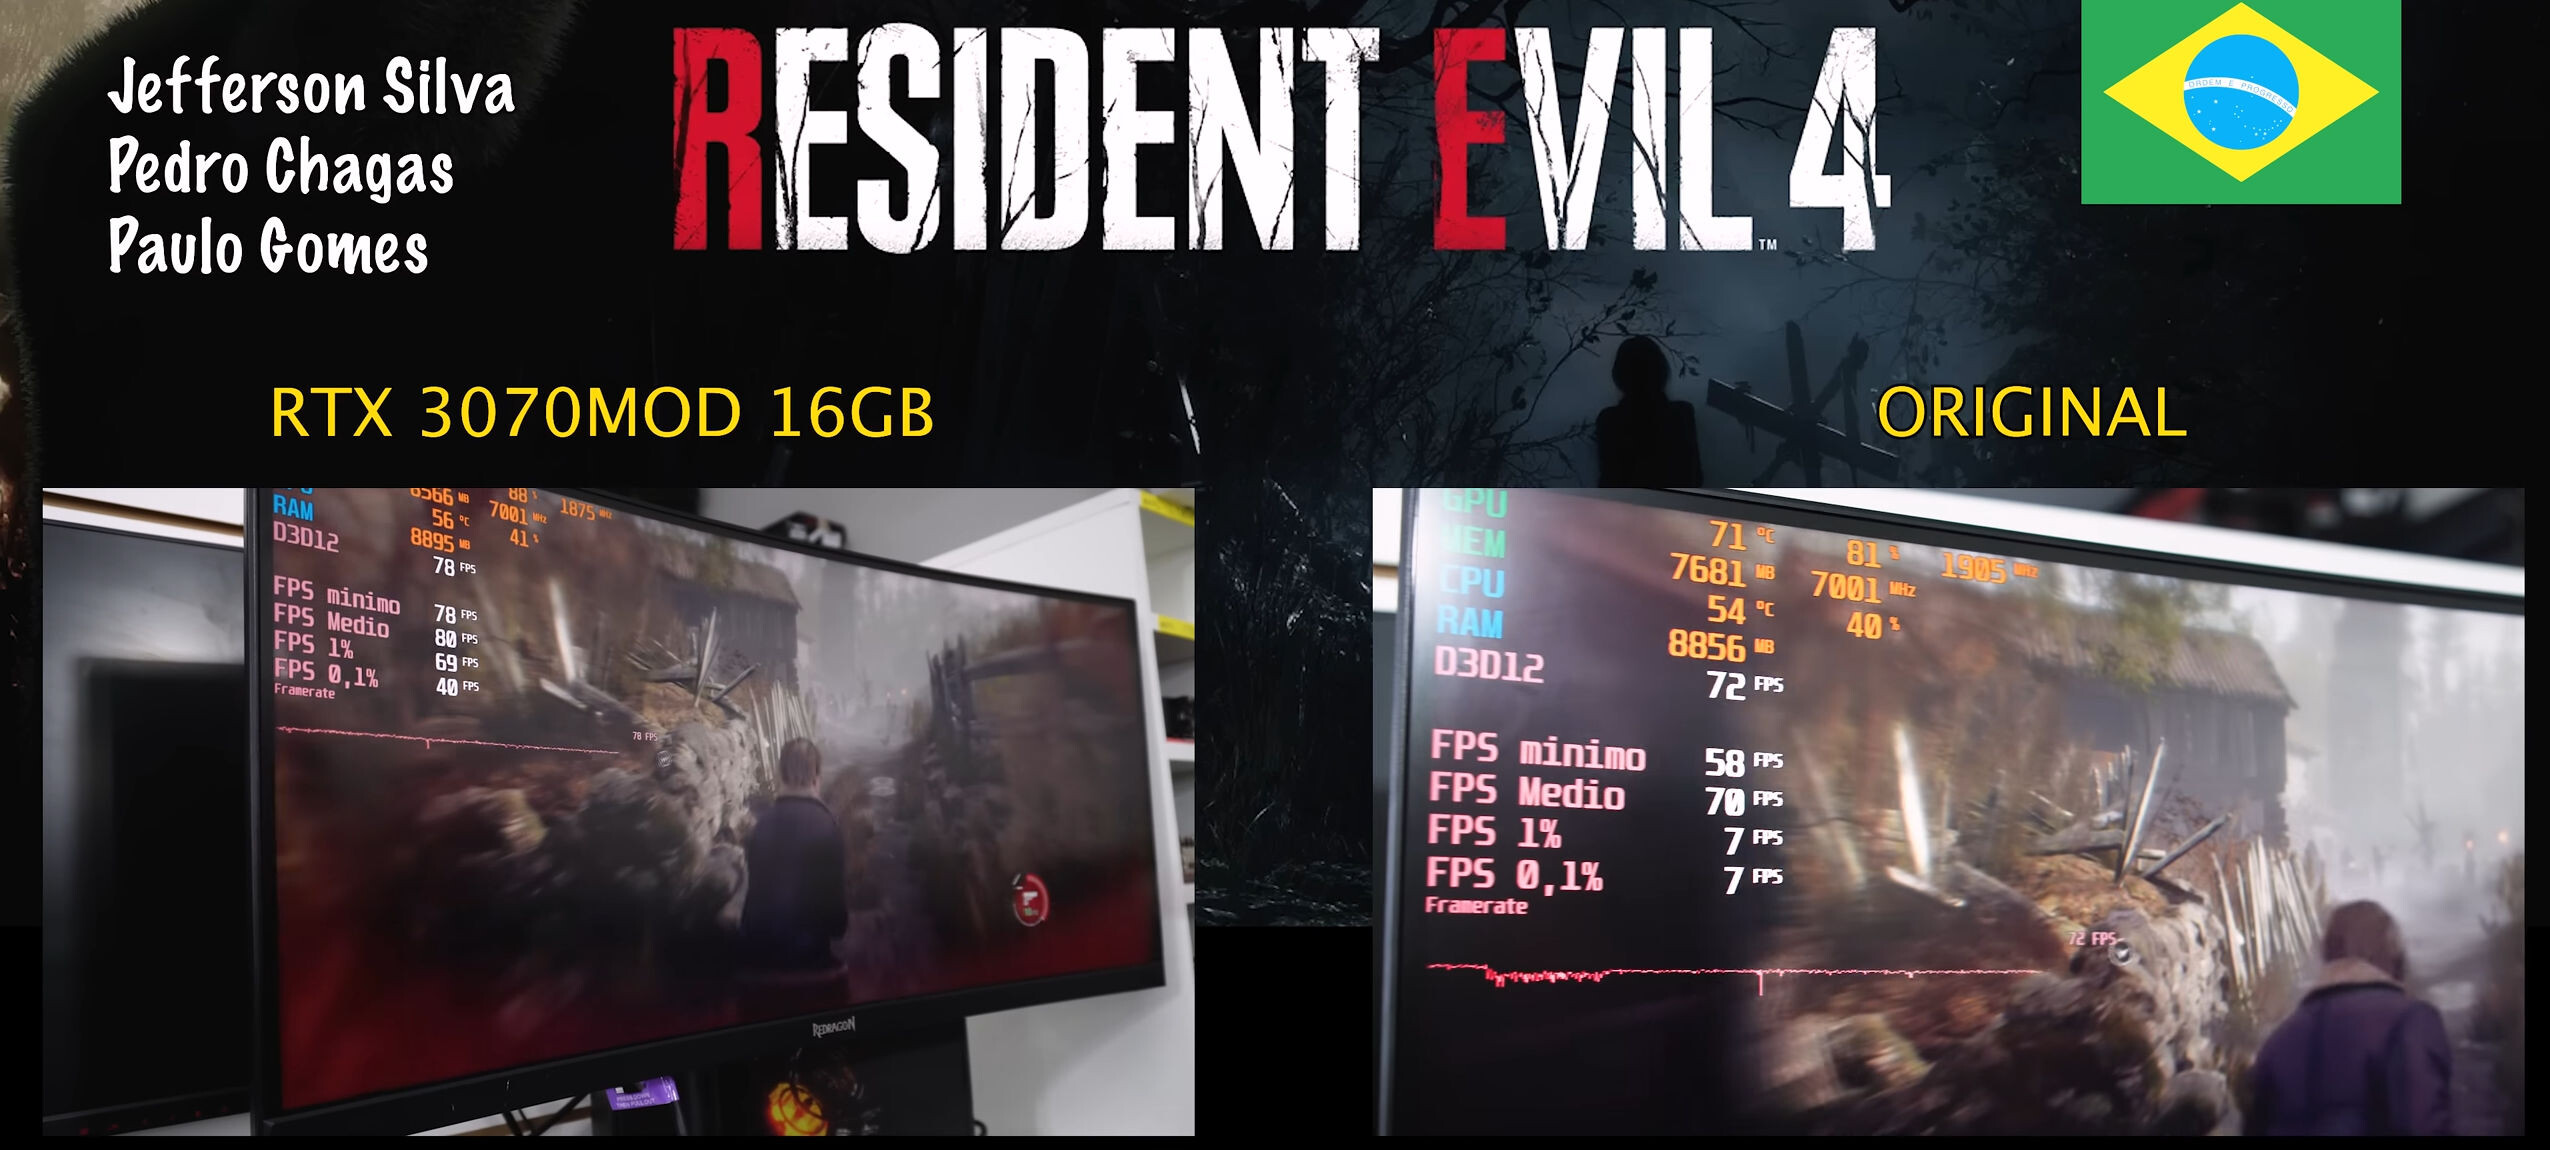 بهبود نرخ فریم بازی Resident Evil 4 با مود کارت گرافیک RTX 3070